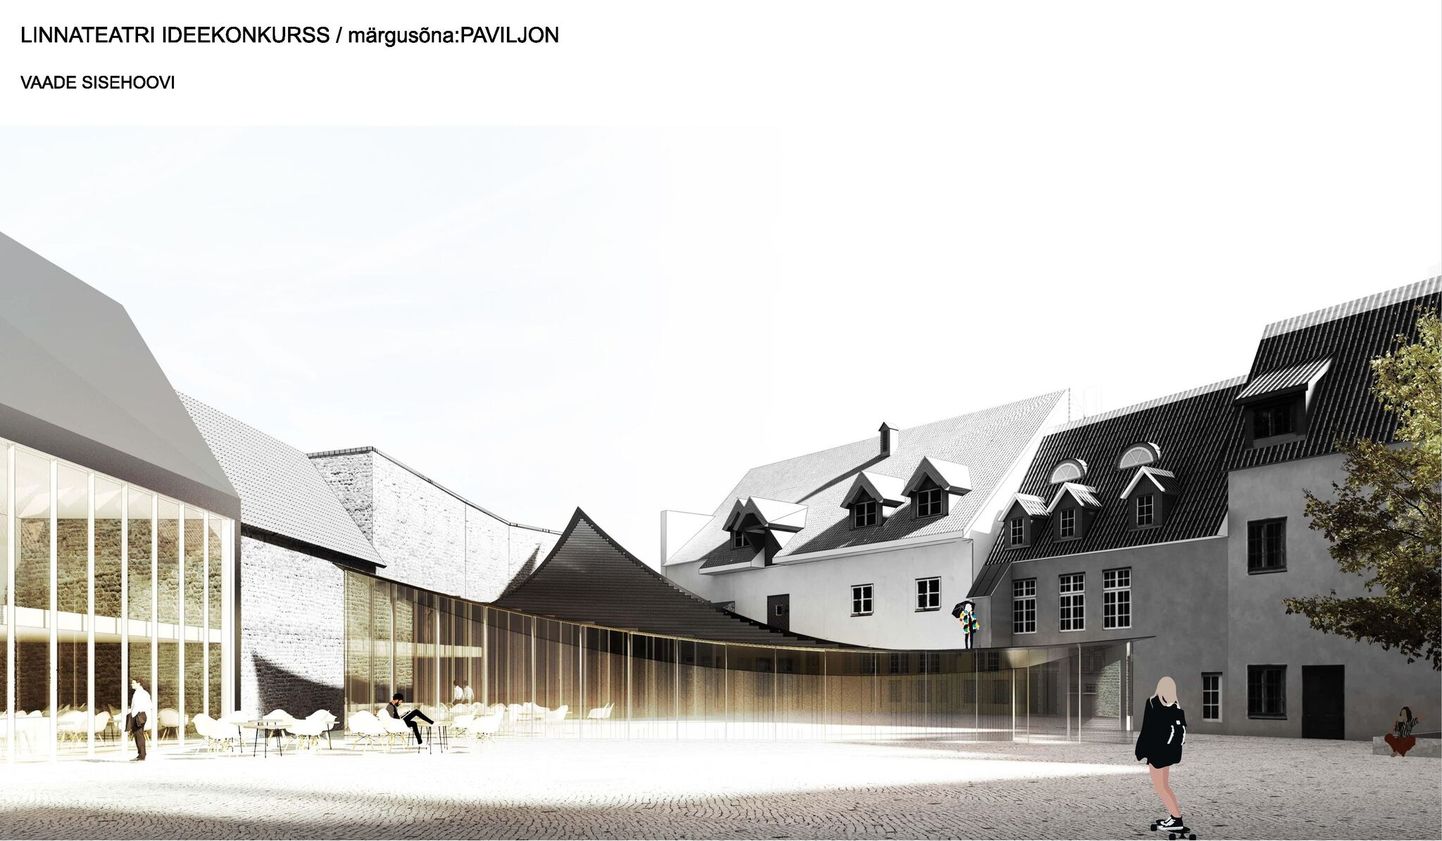 Linnateatri uue maja sisehoovi arhitektuuriline ideekavand võidutöö «Paviljon» kohaselt.